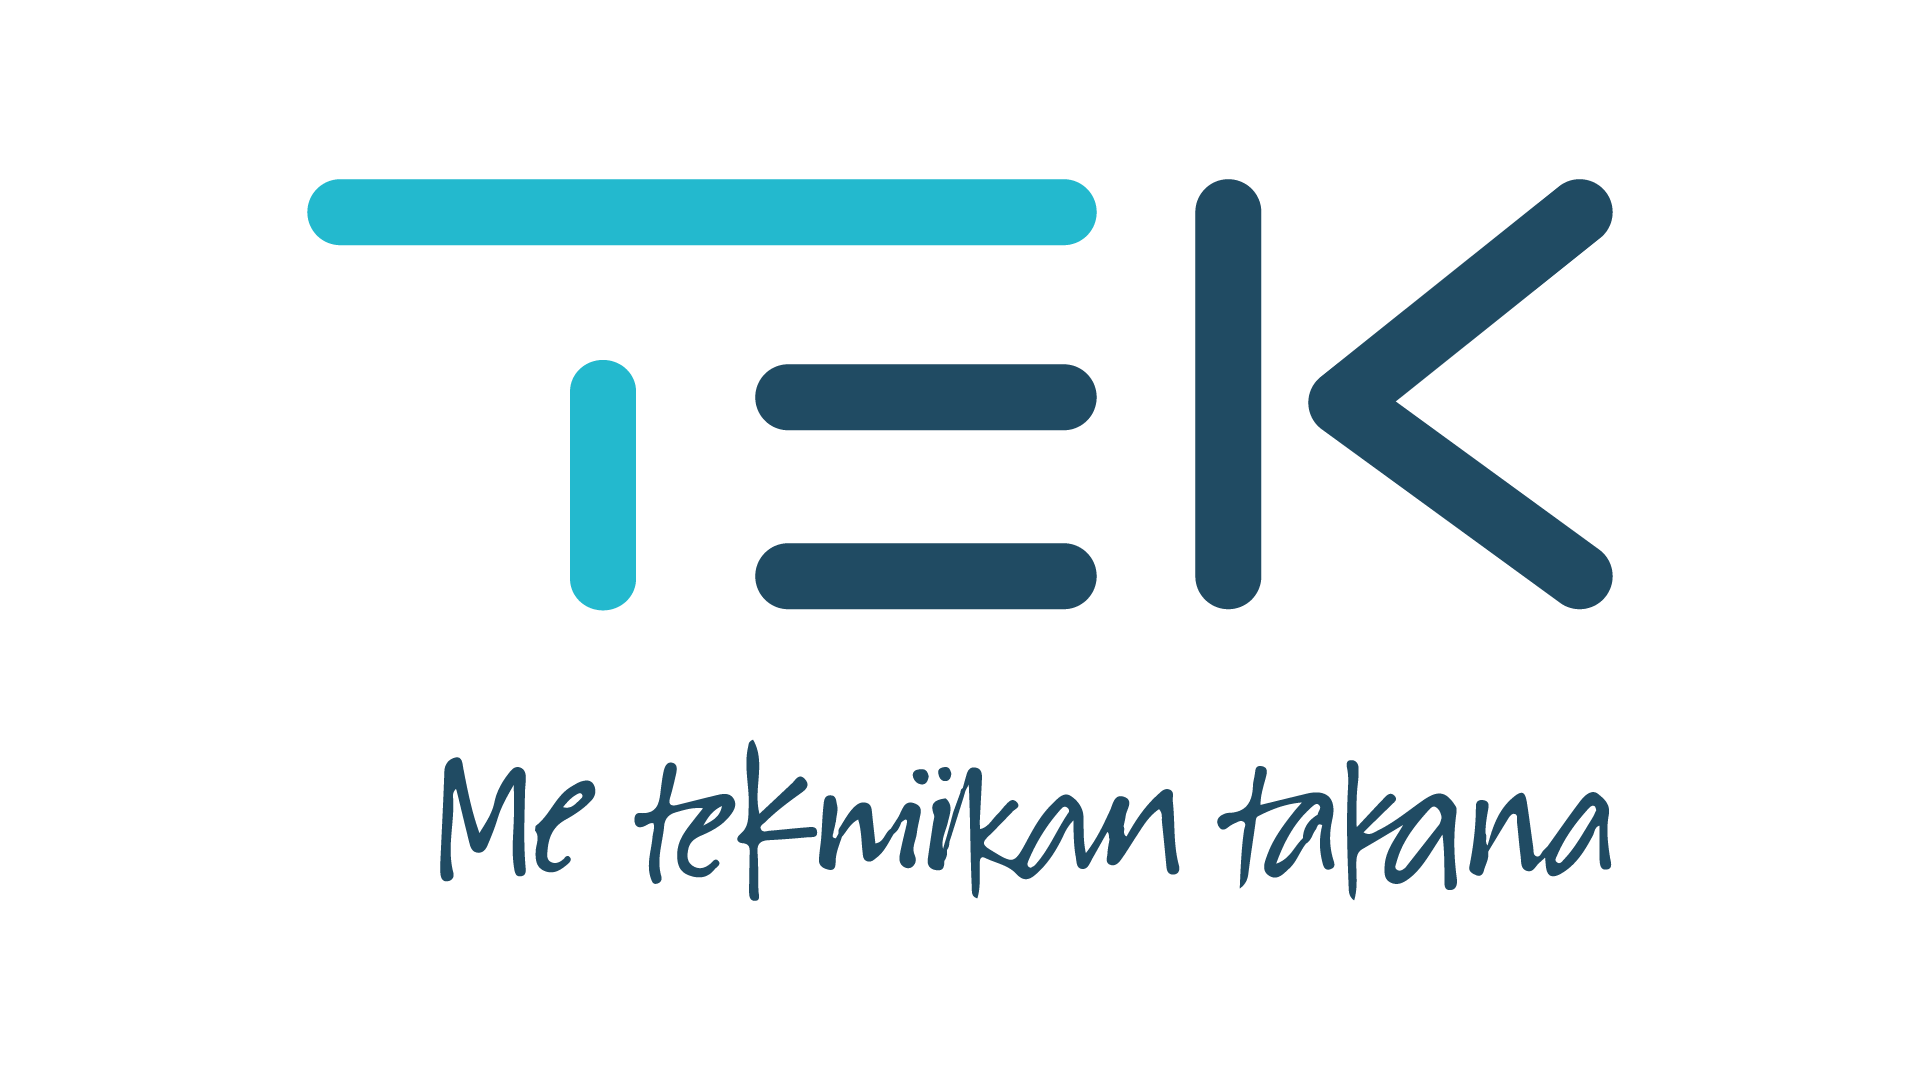 tekin-logo-2022.png (41 KB)